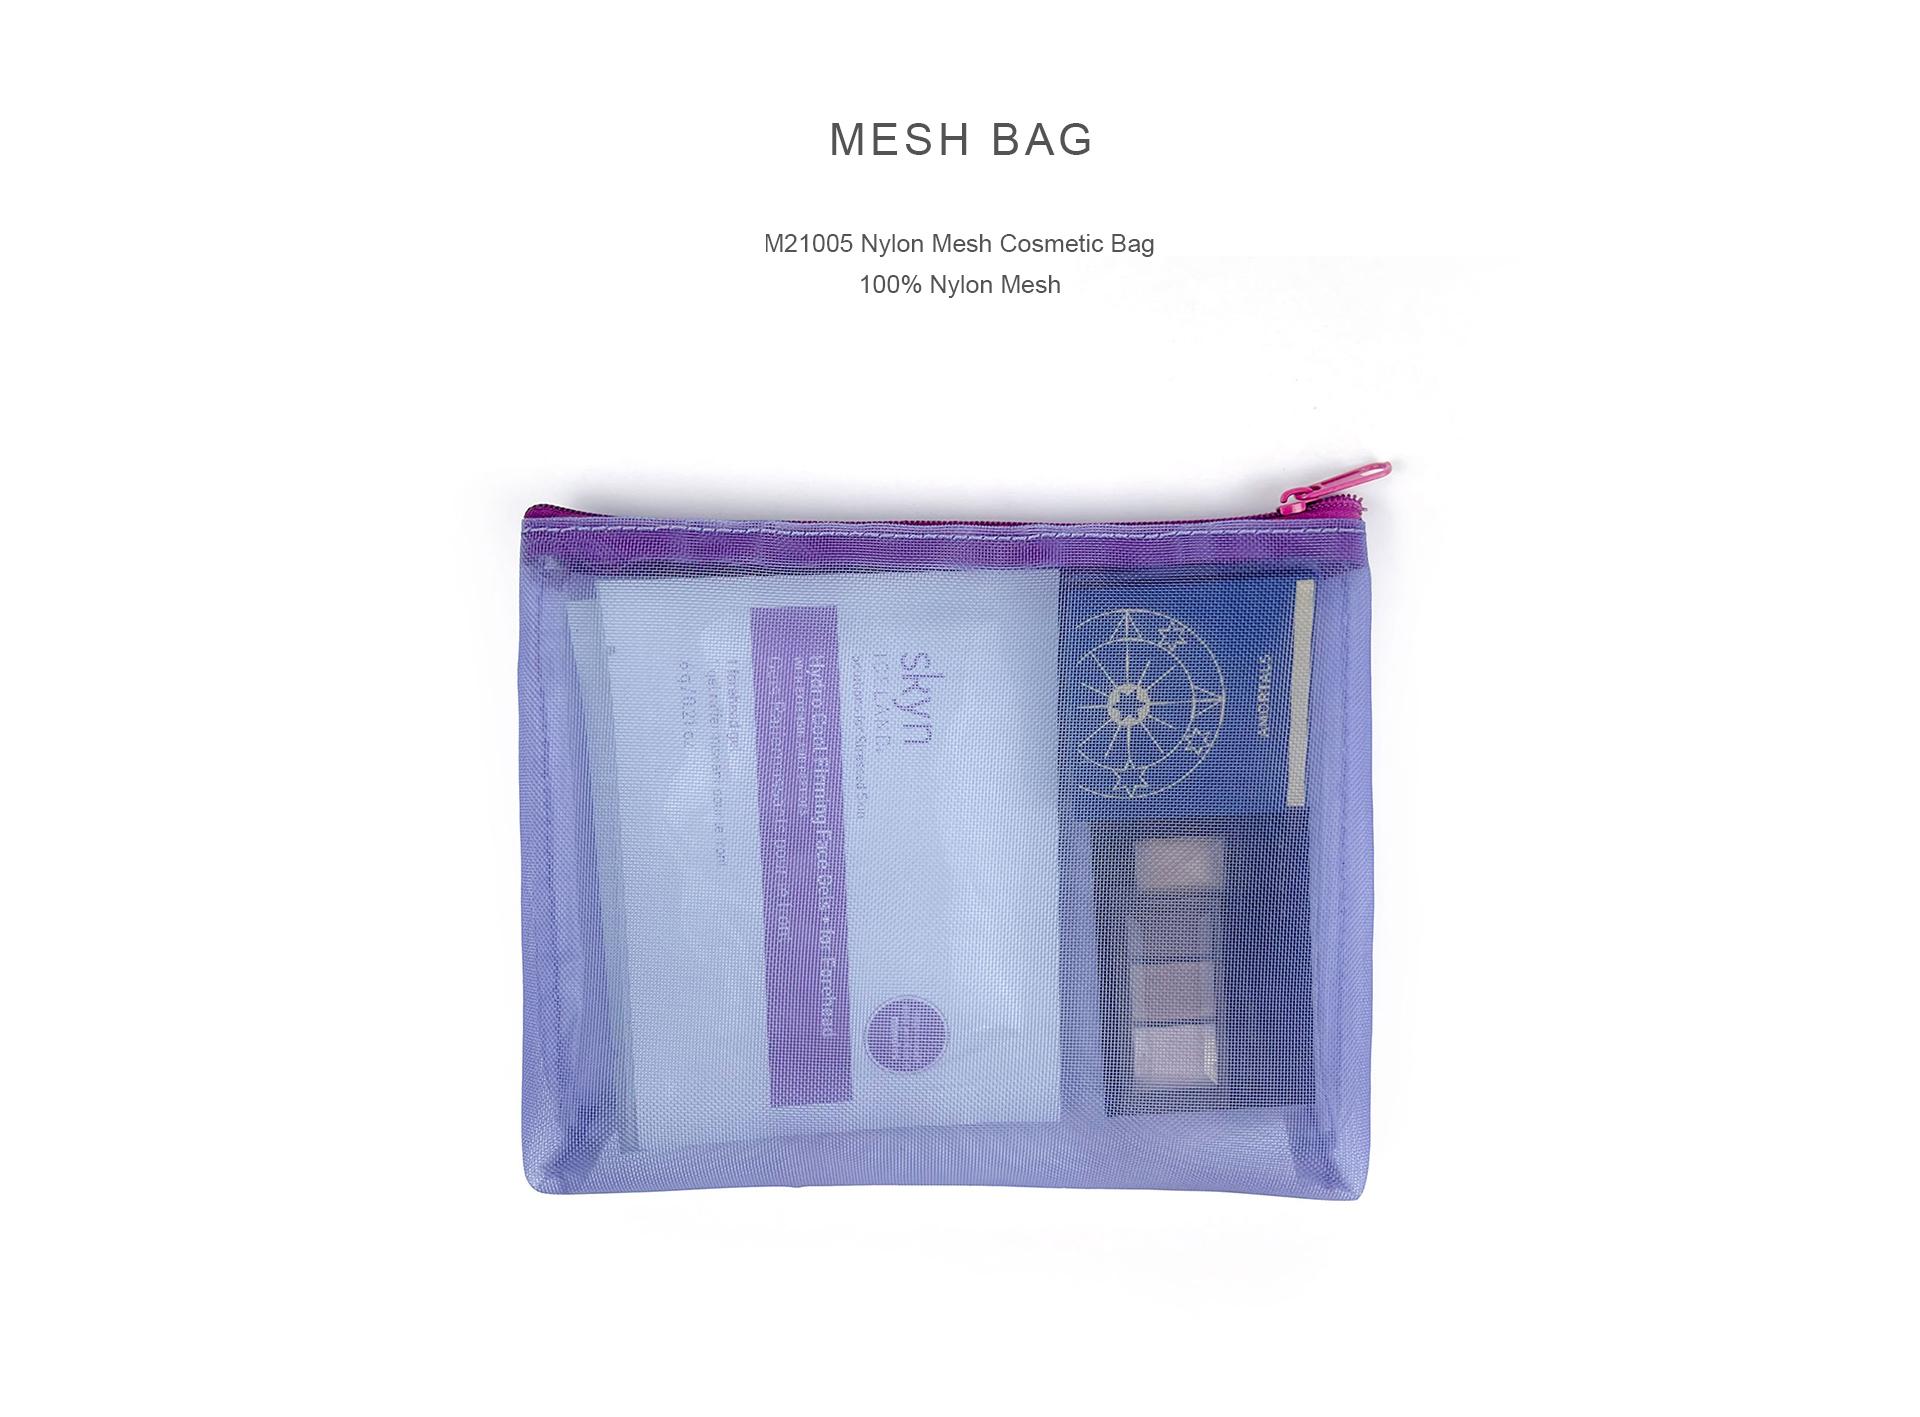 M21005 Nylon Mesh Cosmetic Bag